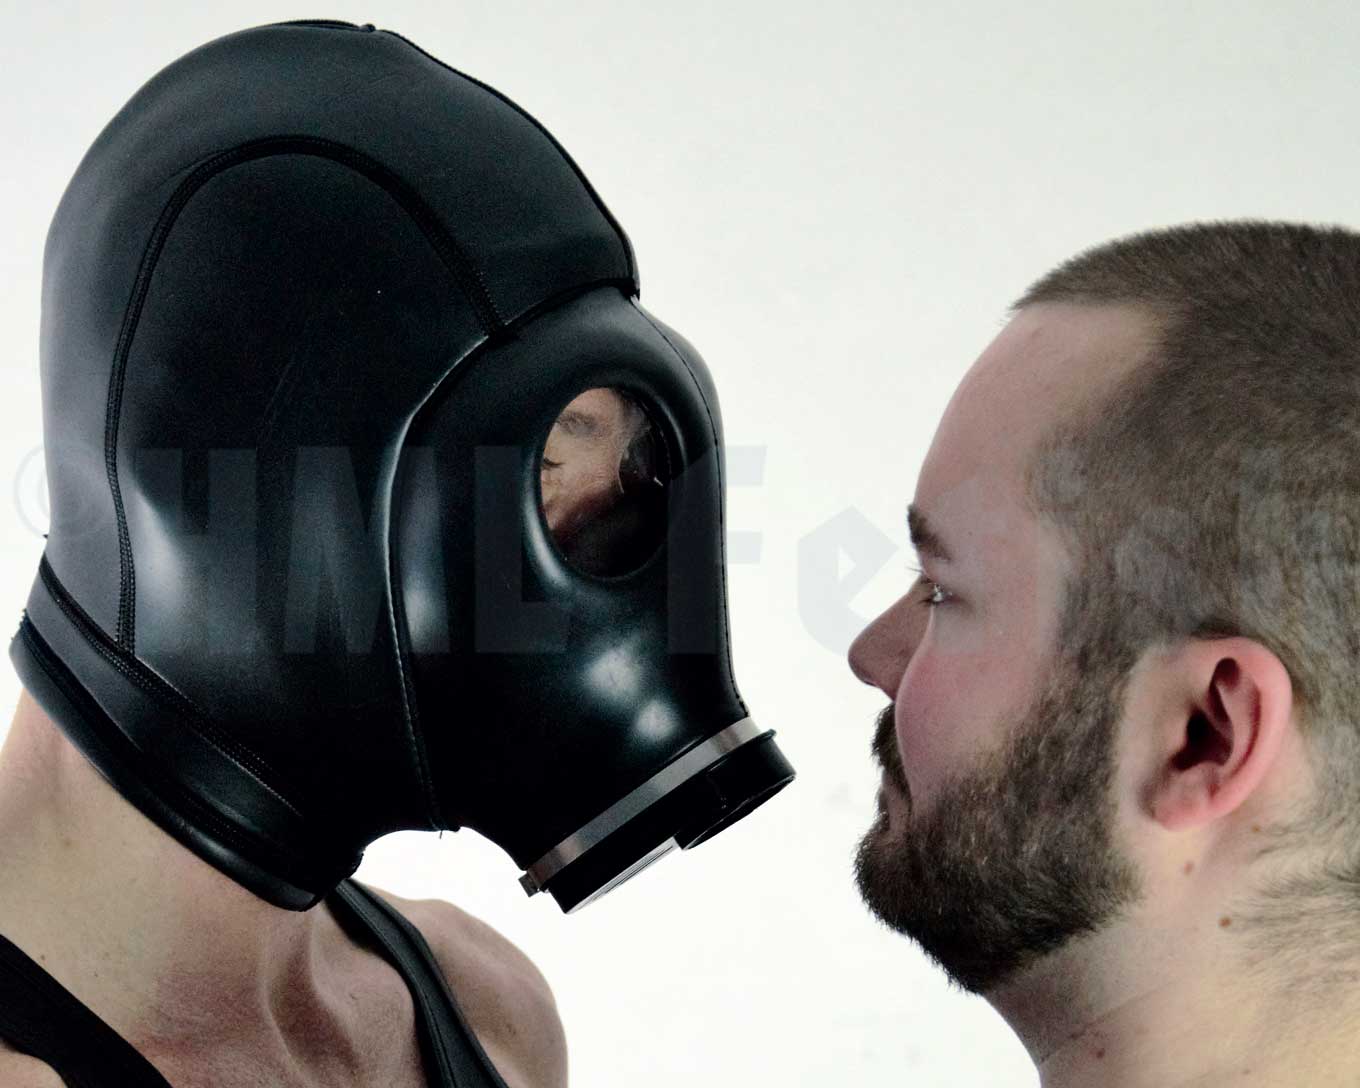 Cagoule en néoprène avec masque à gaz BDSM